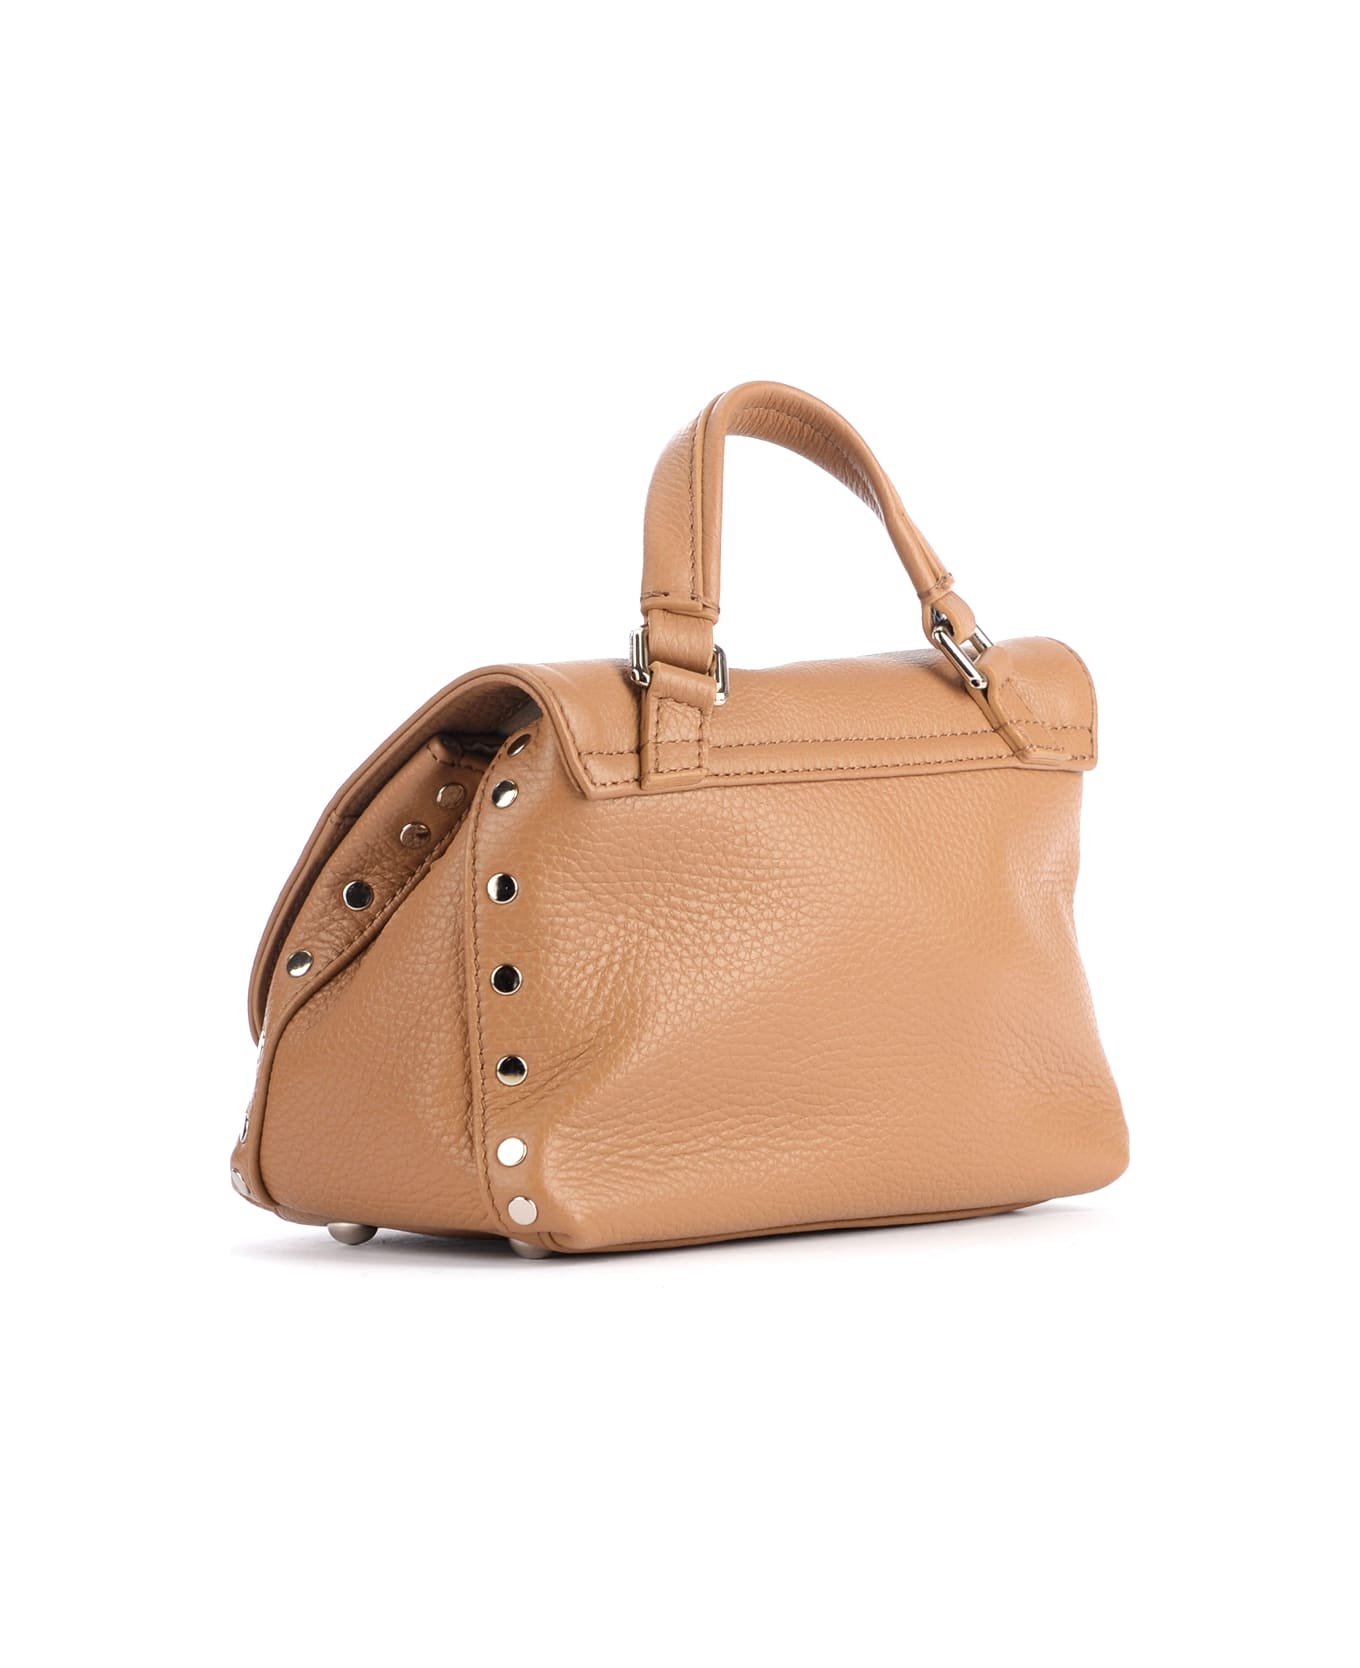 Zanellato Postina Daily Baby Bag In Cappuccino-colored Grained Leather - Cappuccino